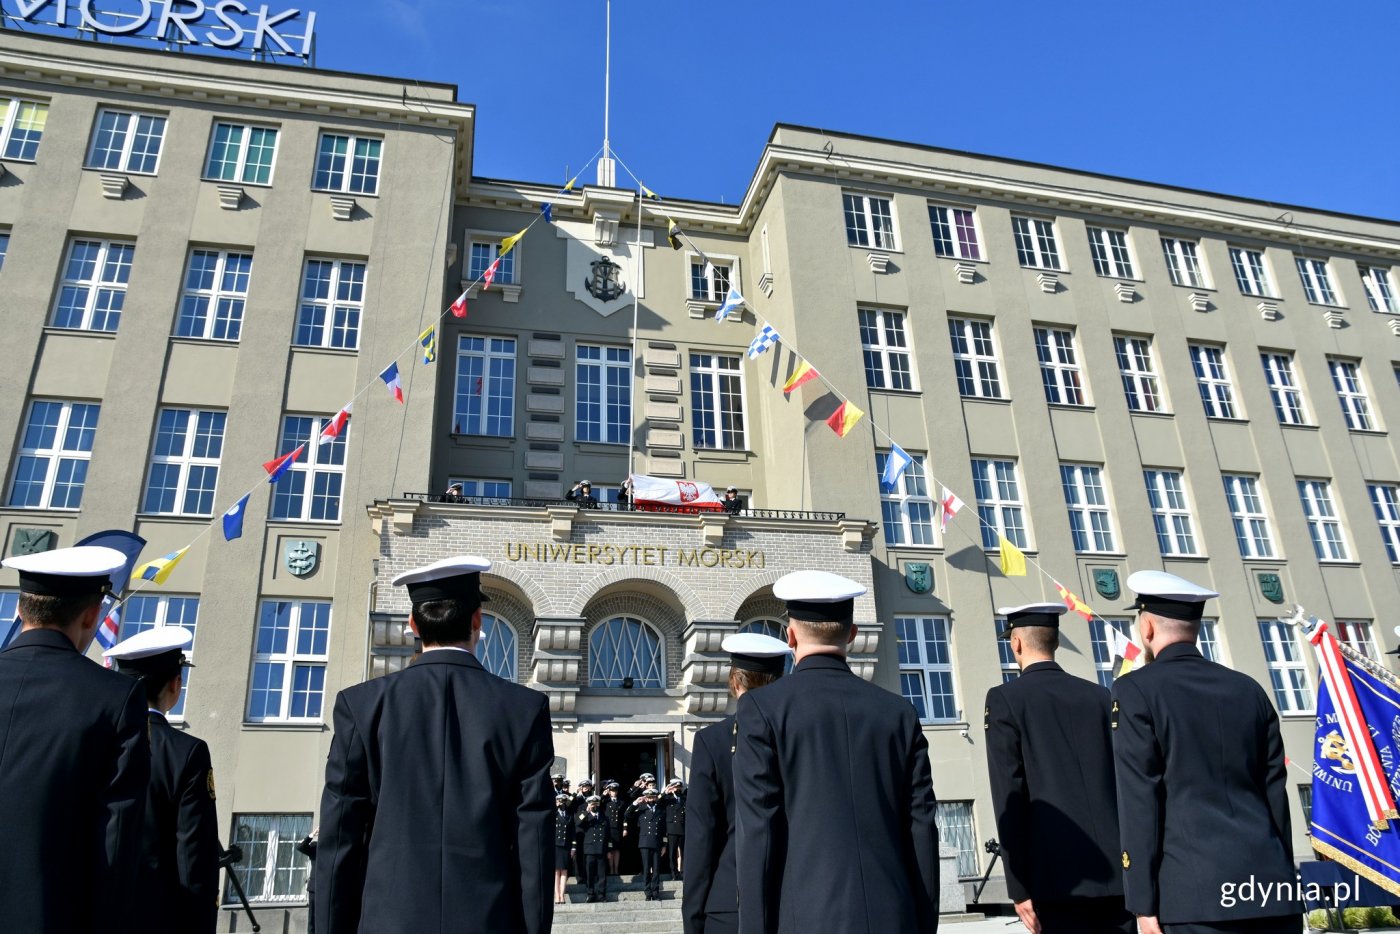 Uroczystość podniesienia bandery na Uniwersytecie Morskim w Gdyni z okazji 100. rocznicy jego powstania. Zdjęcie z czerwca 2020 roku // fot. Magdalena Czernek